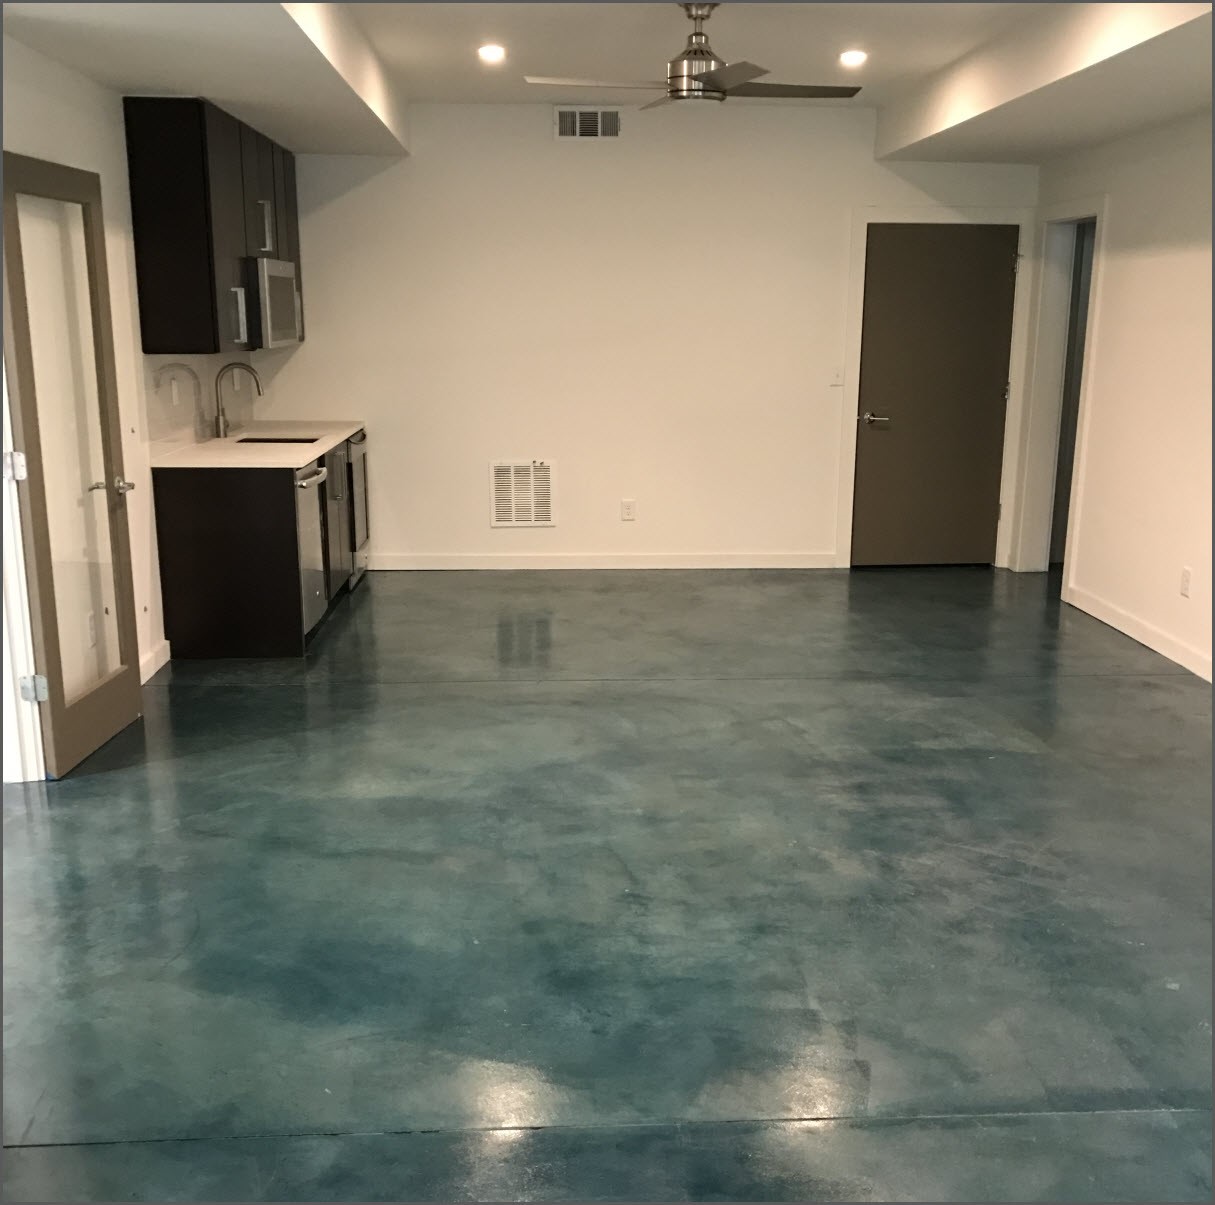 Aqua colored kitchen floor